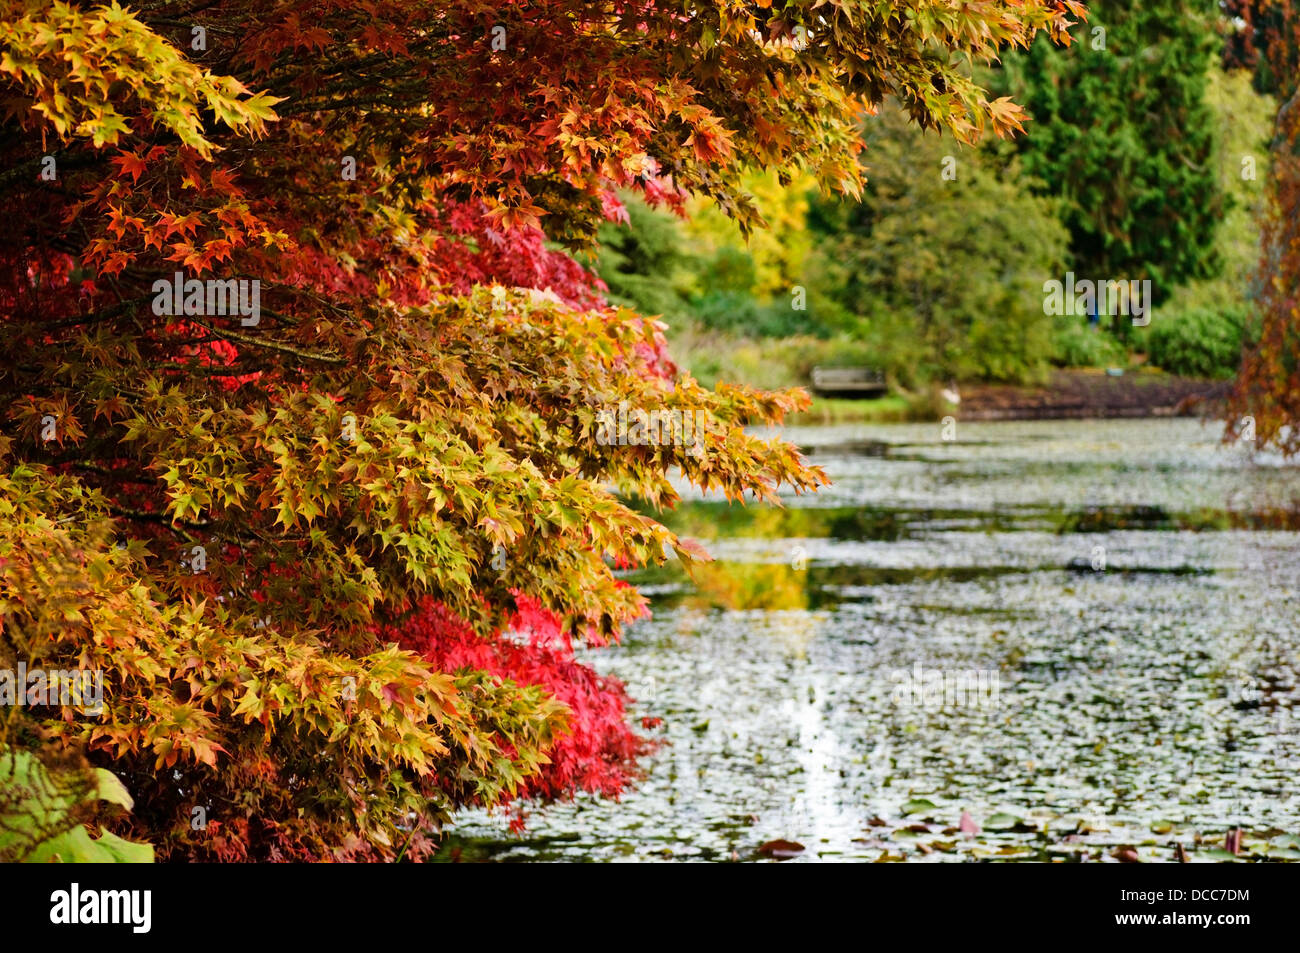 Jardins botaniques VanDusen à Vancouver en automne. Feuilles d'automne colorées au jardin VanDusen. Banque D'Images